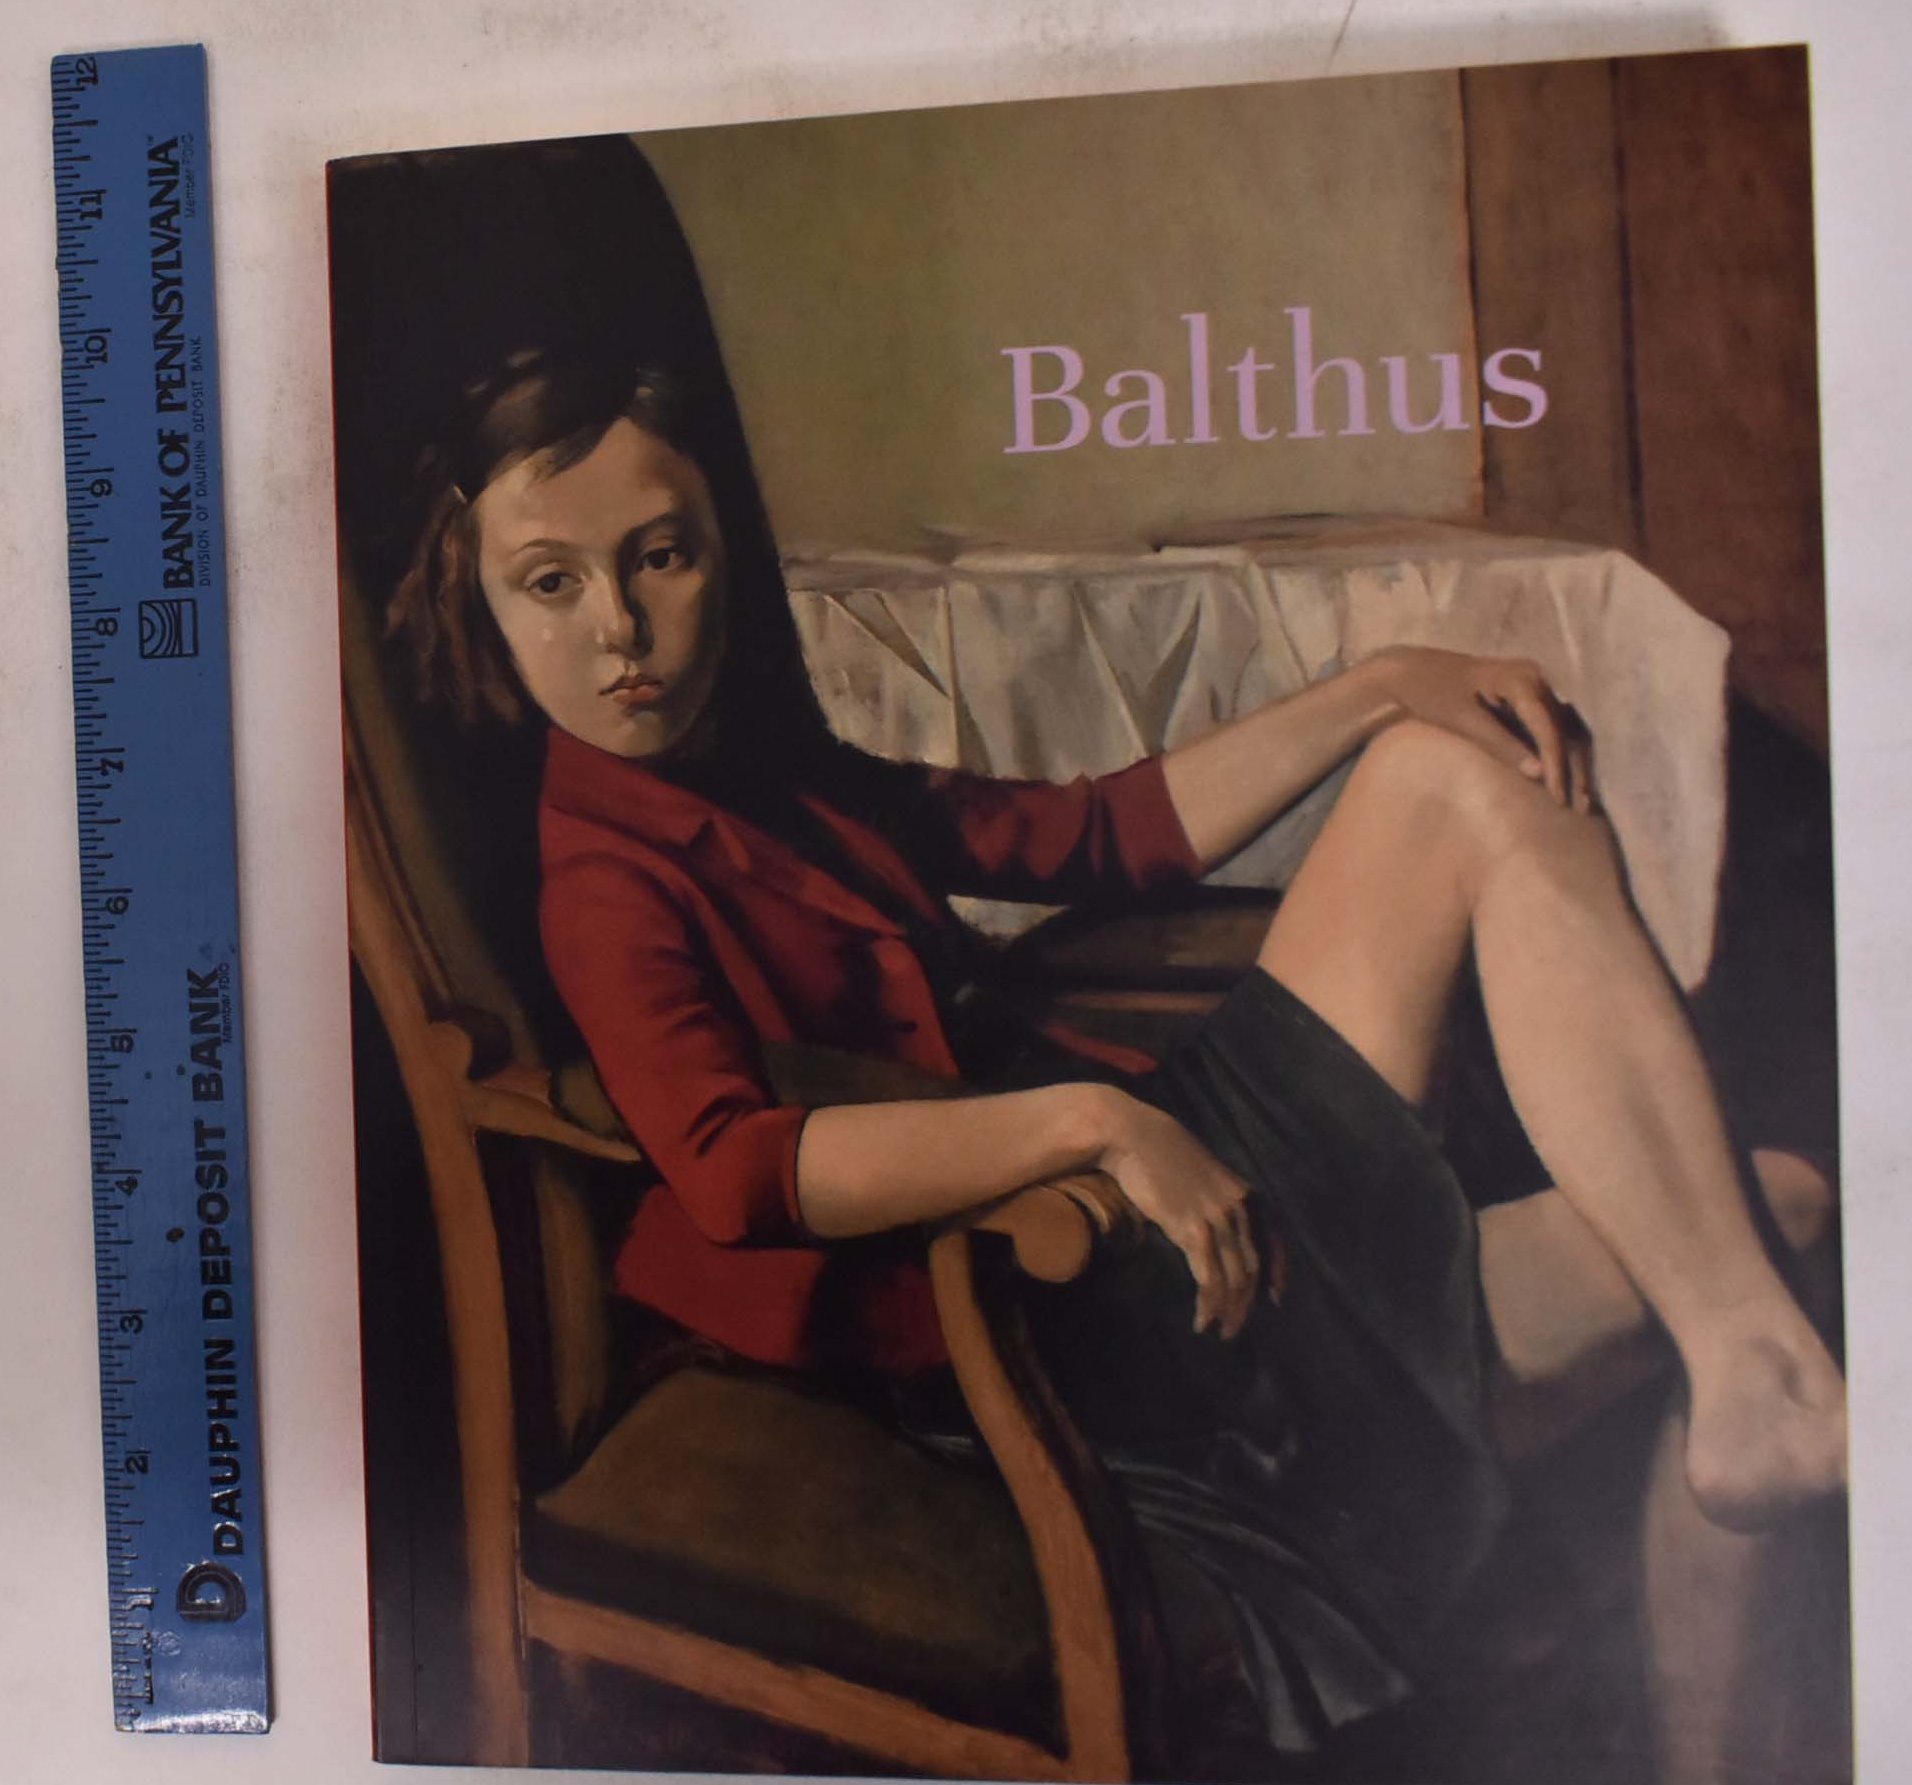 Balthus - Bouvier, Raphael, Michiko Kono, Olivier Berggruen, et al.